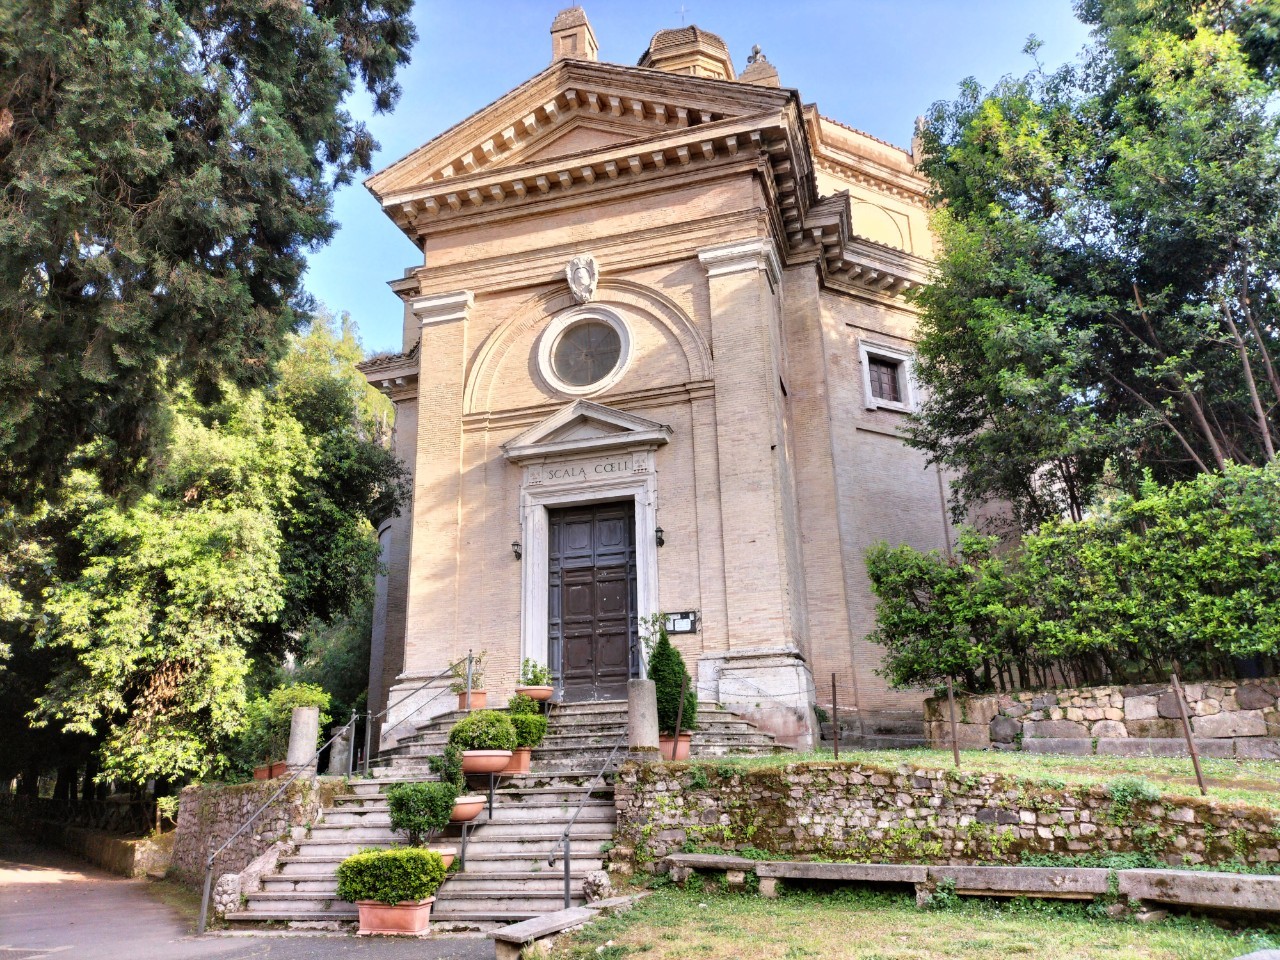 「天梯教堂」門頂寫著Scala Coeli（天堂的階梯），教堂因此得名。